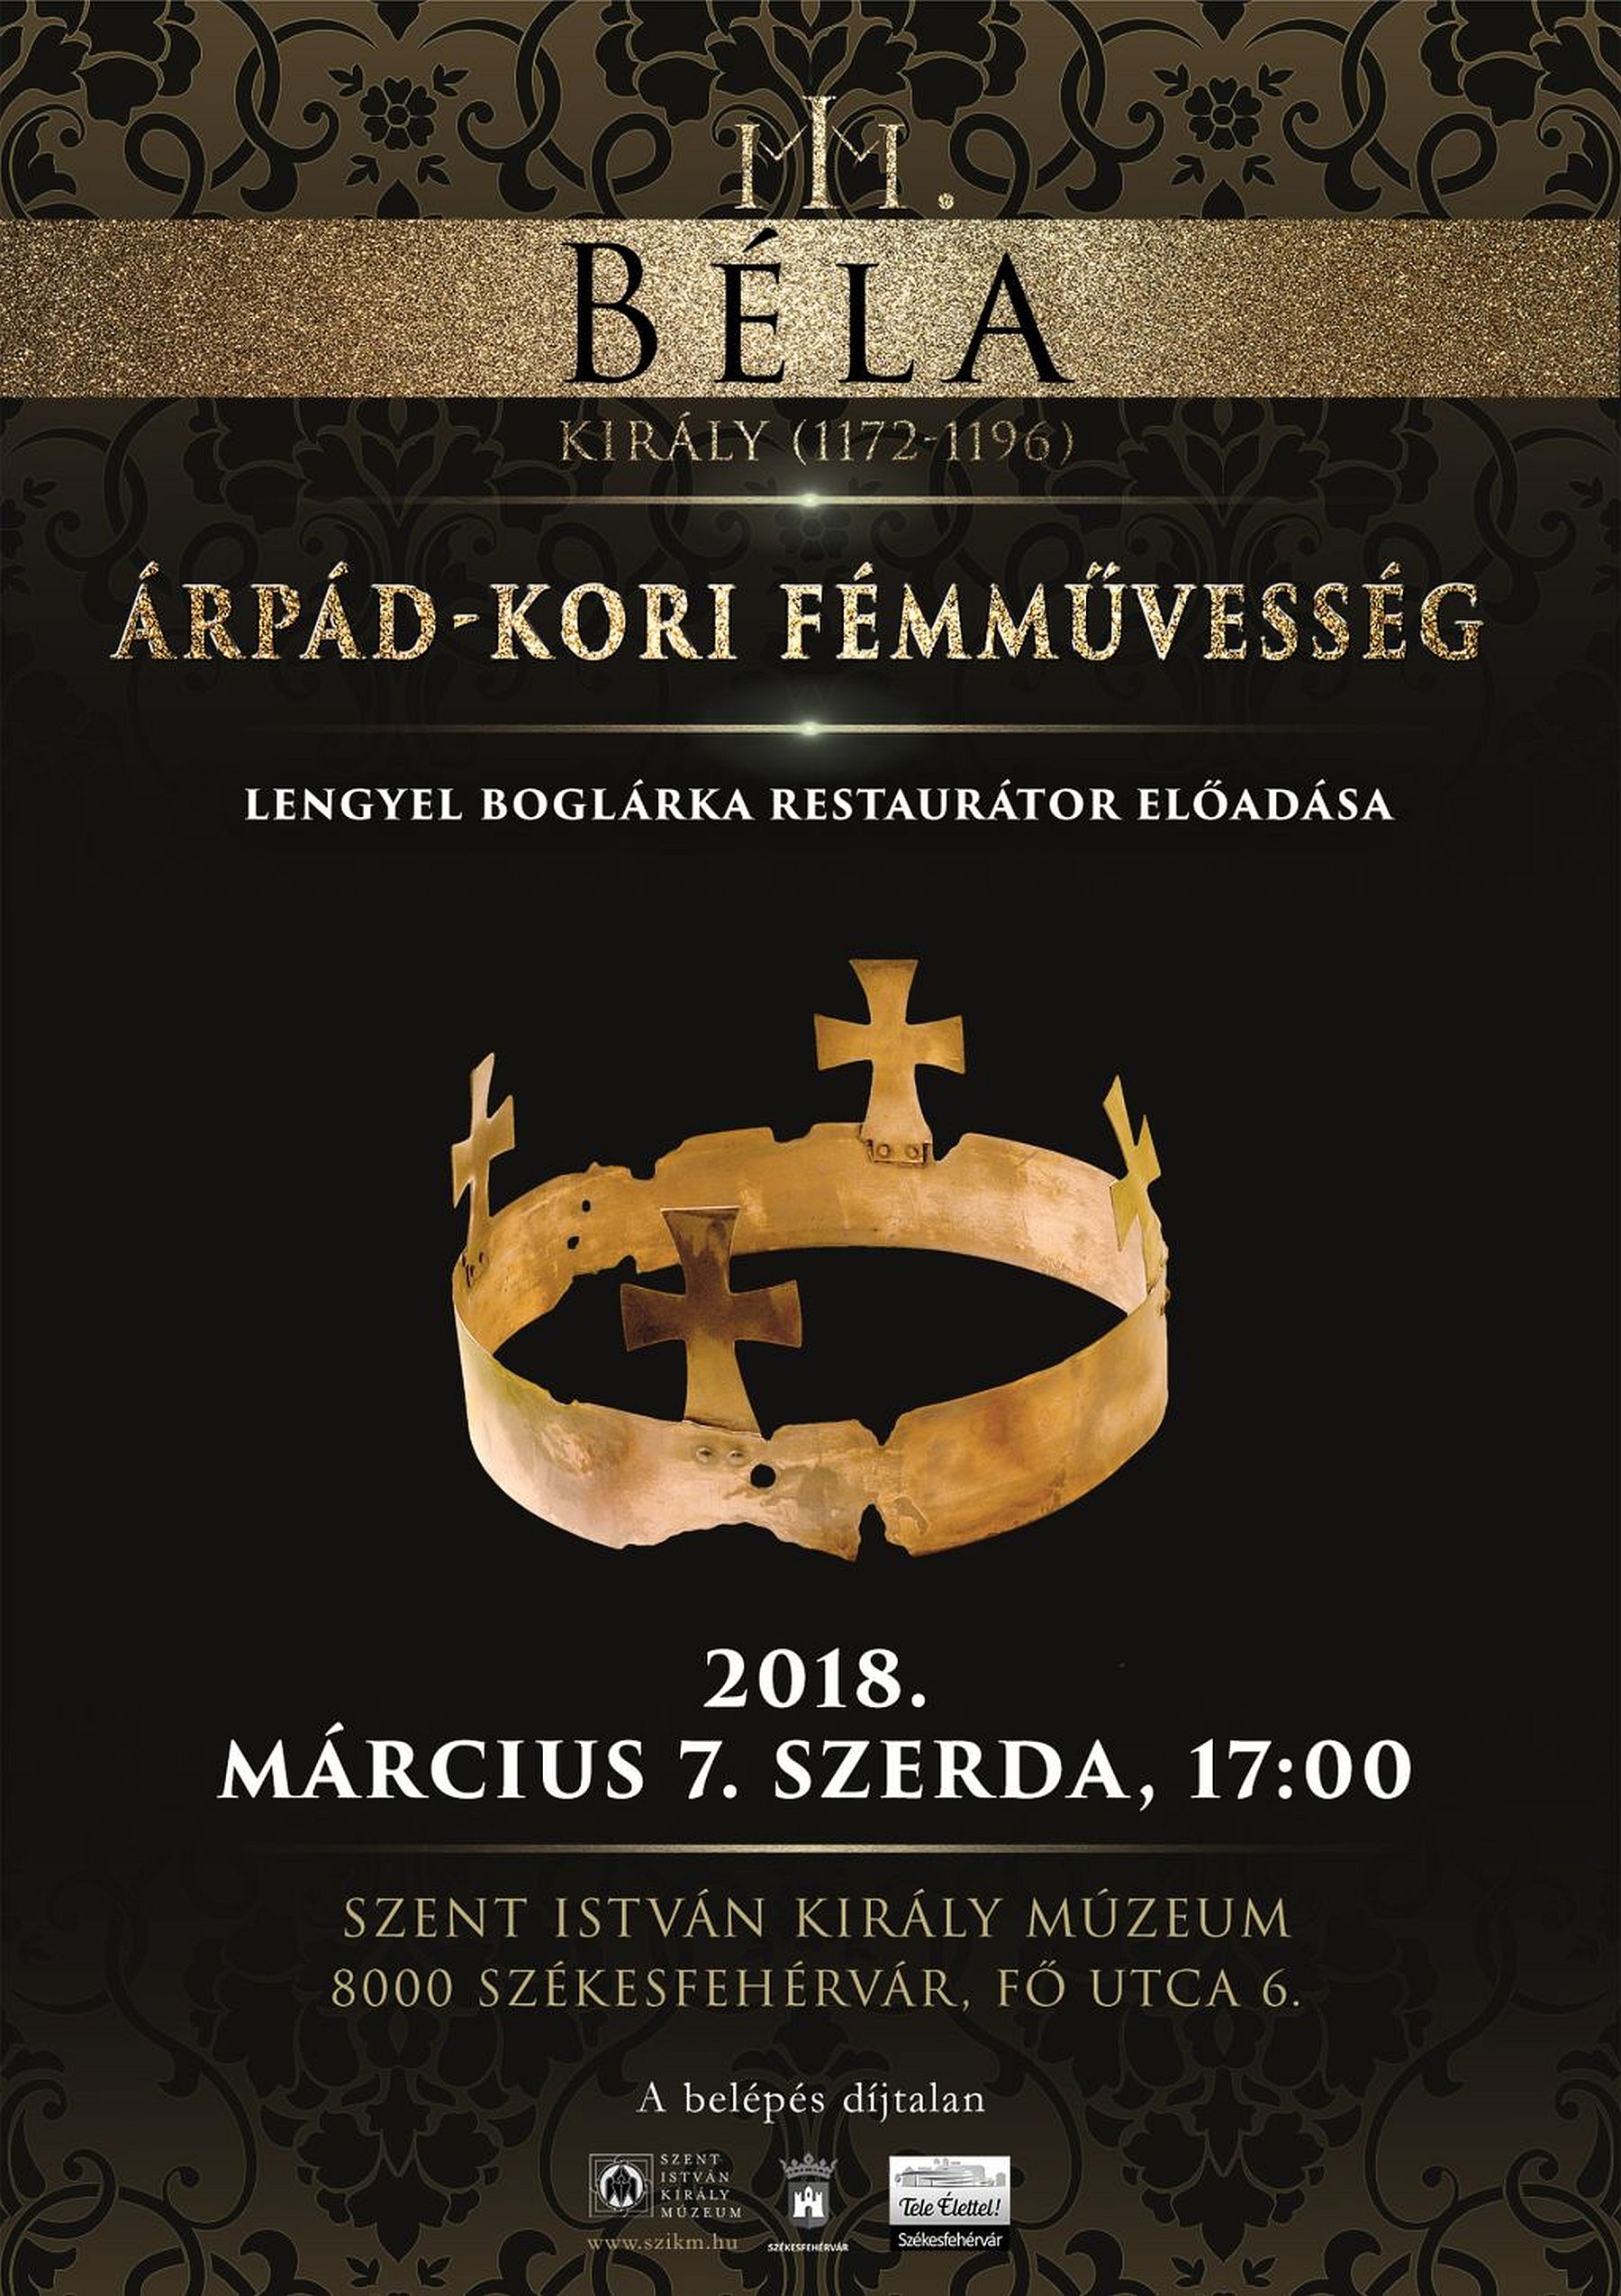 Az Árpád-kori fémművességről lesz szó a III. Béla kiállításhoz kapcsolódóan